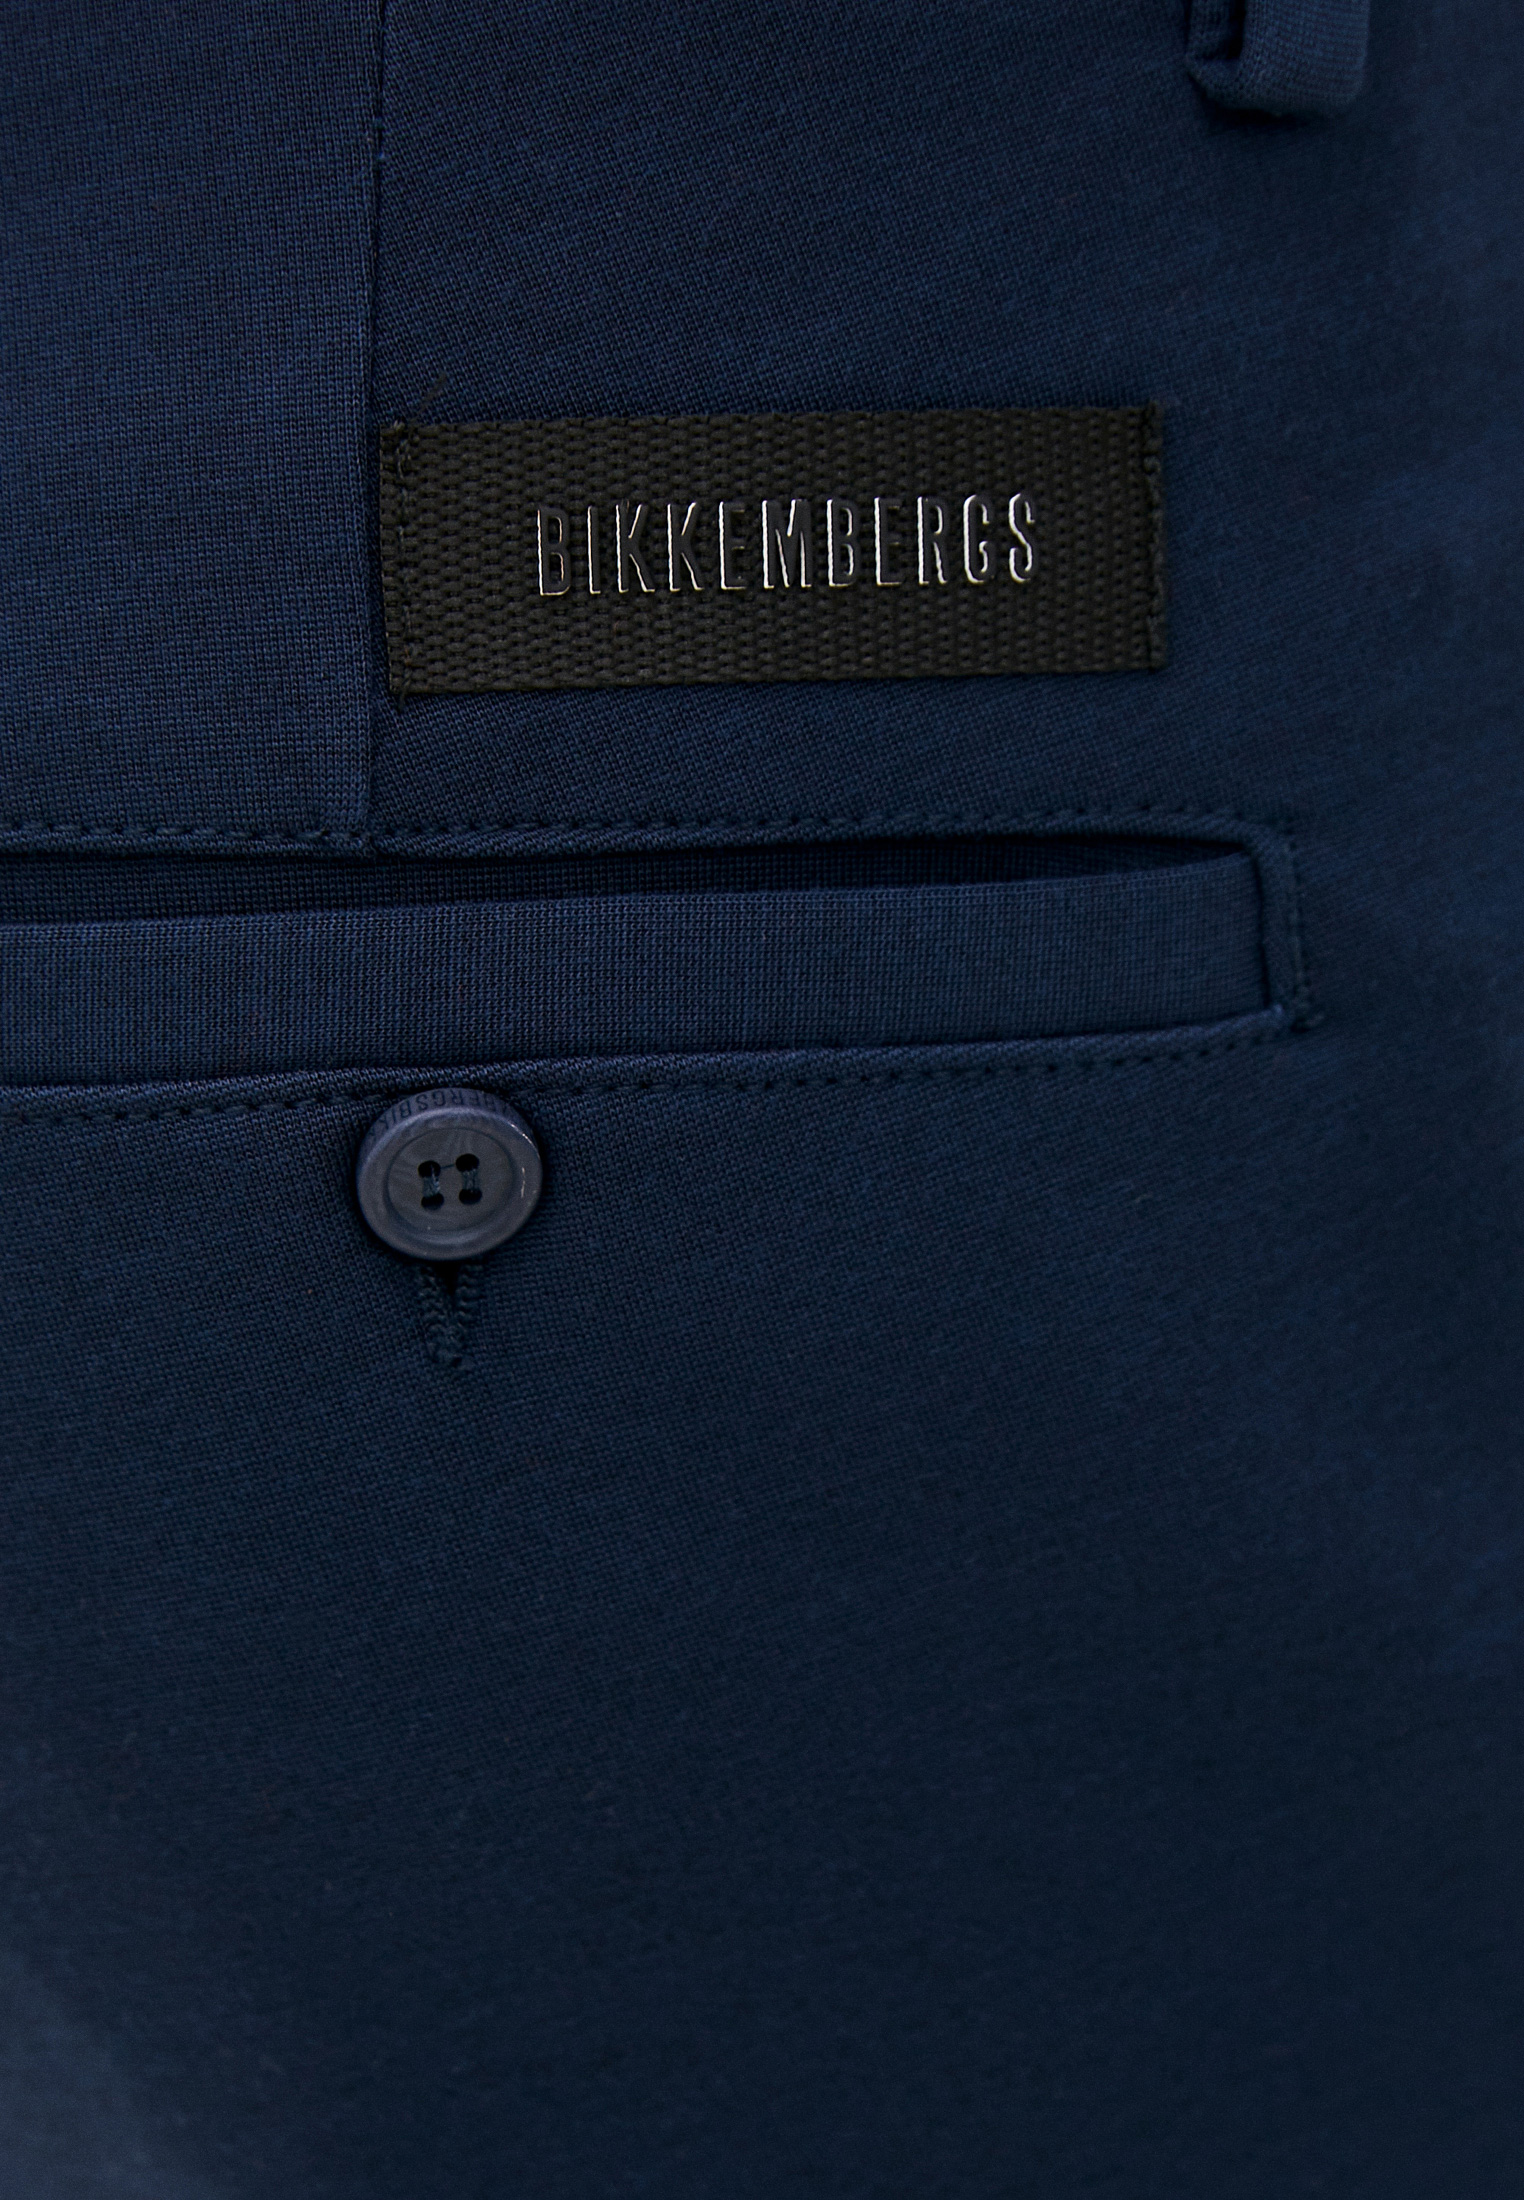 Мужские повседневные брюки Bikkembergs (Биккембергс) C 1 150 80 E 2190: изображение 5